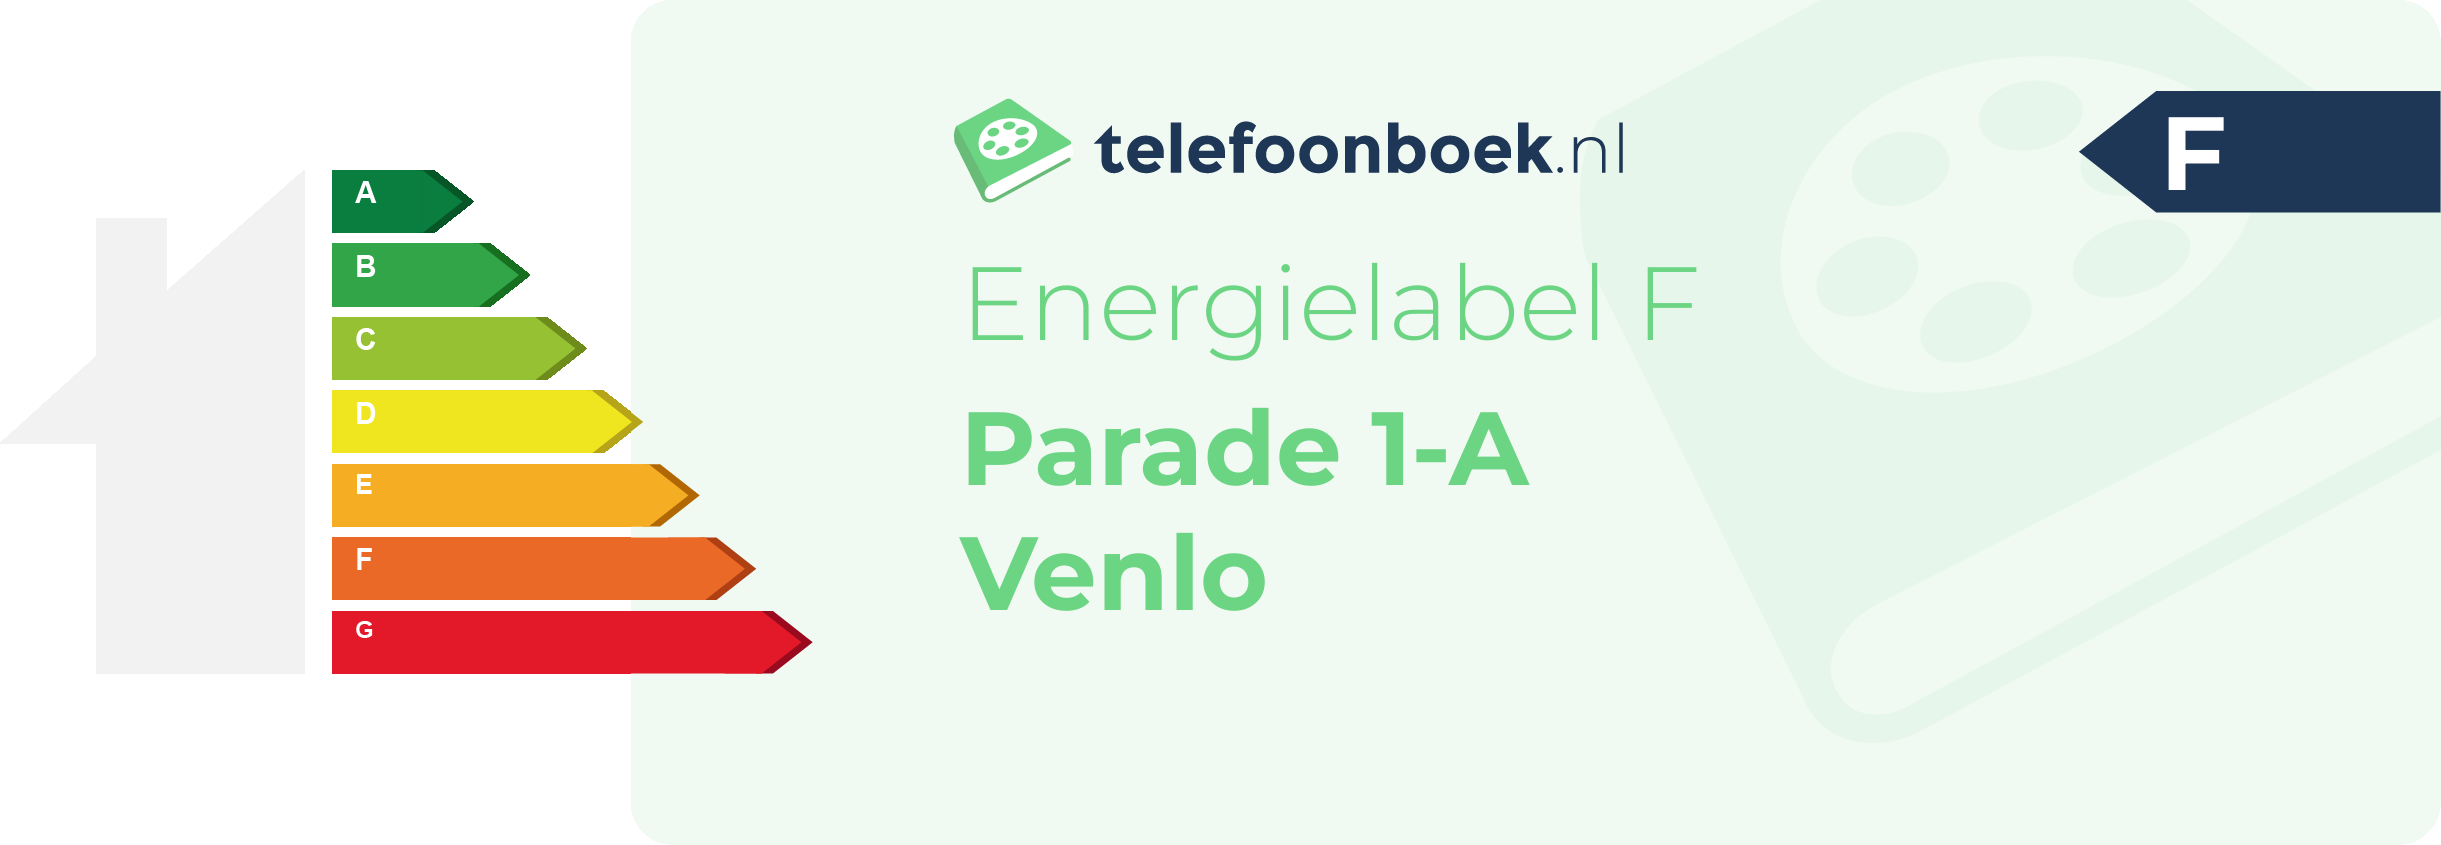 Energielabel Parade 1-A Venlo